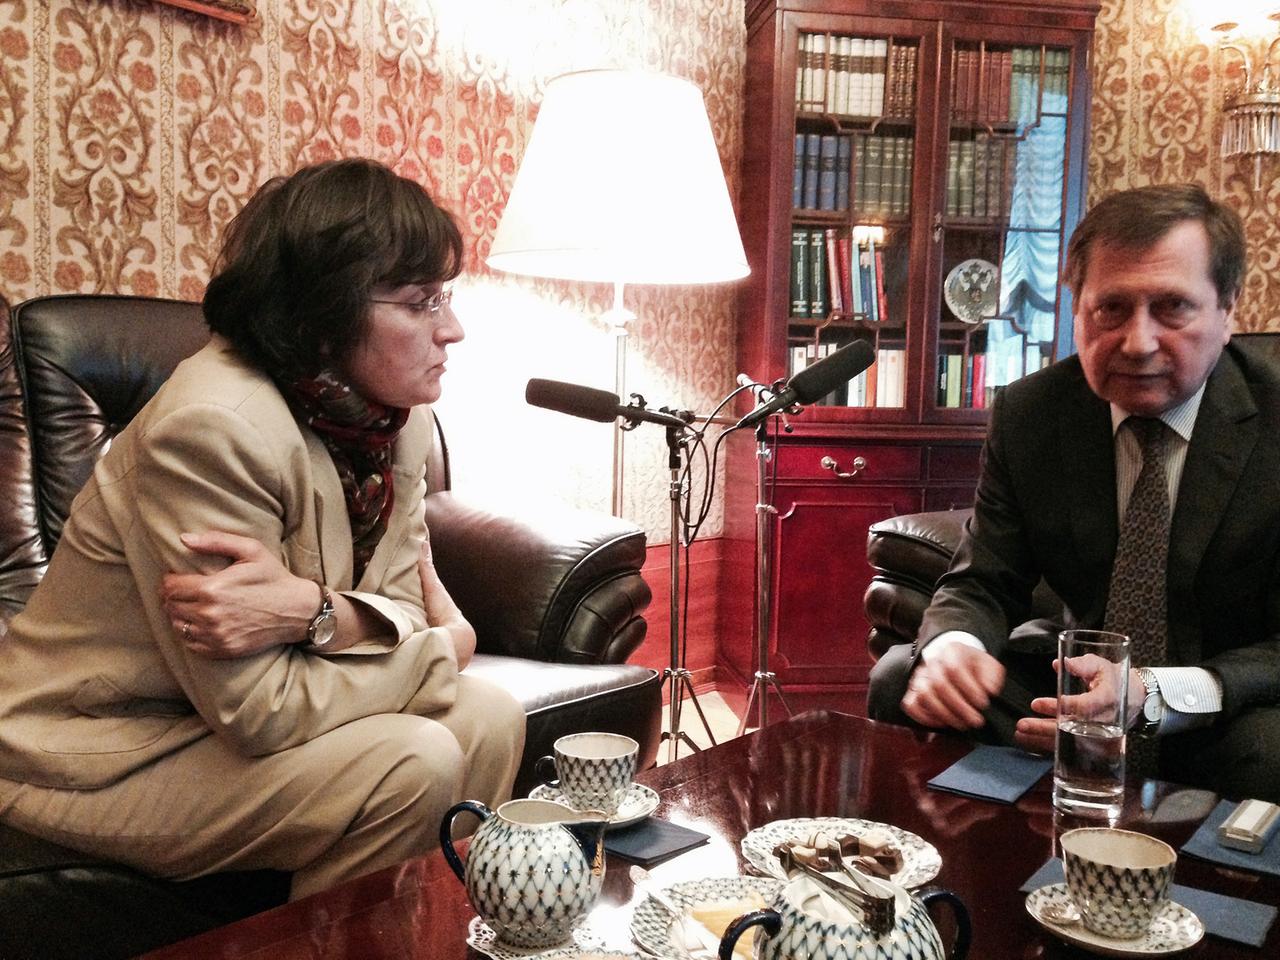 Chefredakteurin Birgit Wentzien und der russische Botschafter Wladimir Grinin sitzen in einem Wohnzimmer.